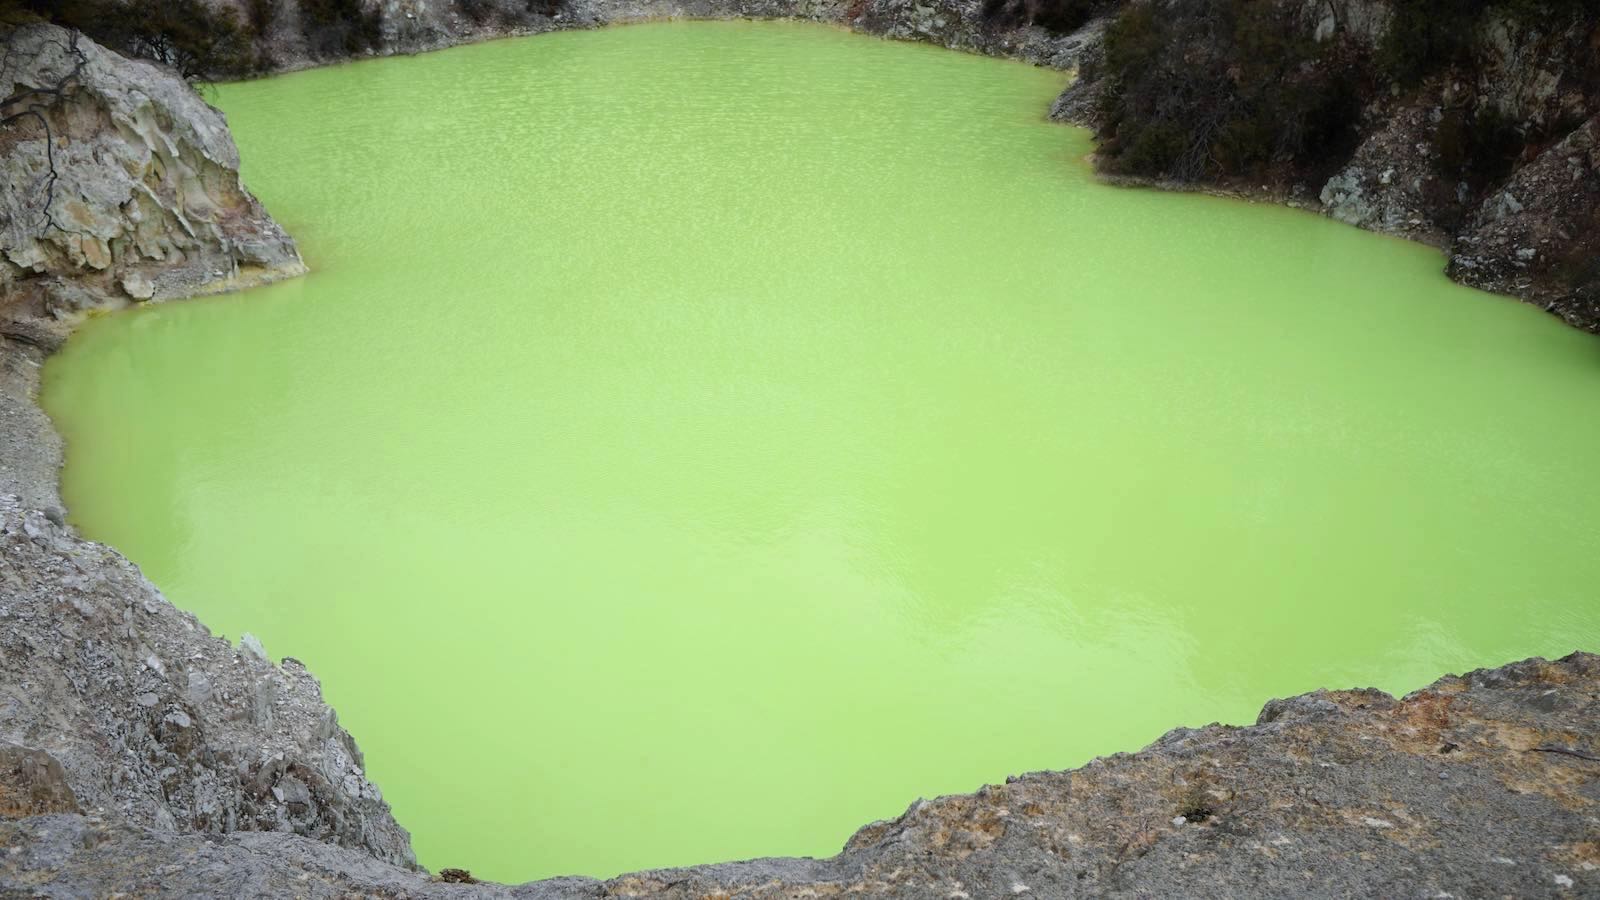 Or strange green lake?